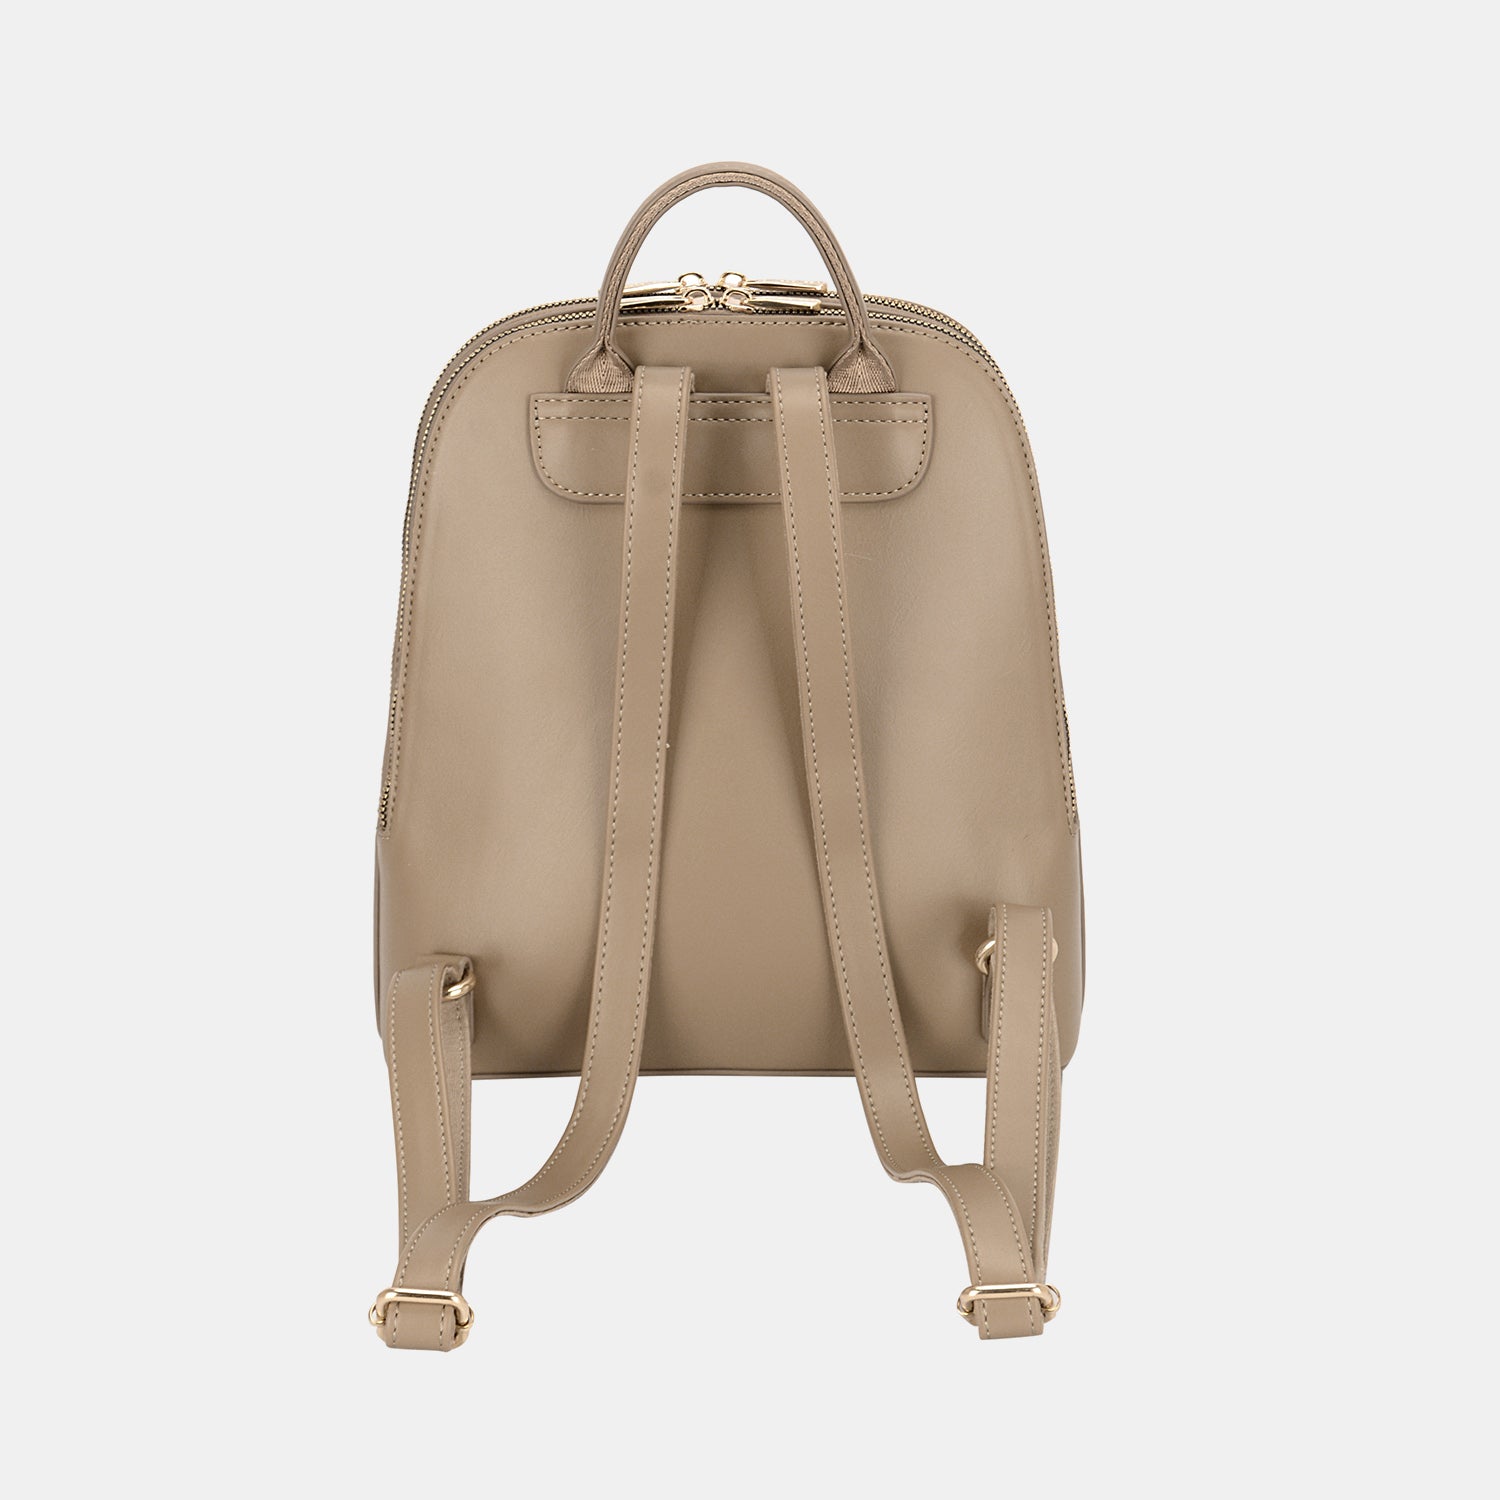 TEEK - David Jones Adjustable Straps Backpack Bag BAG TEEK Trend   